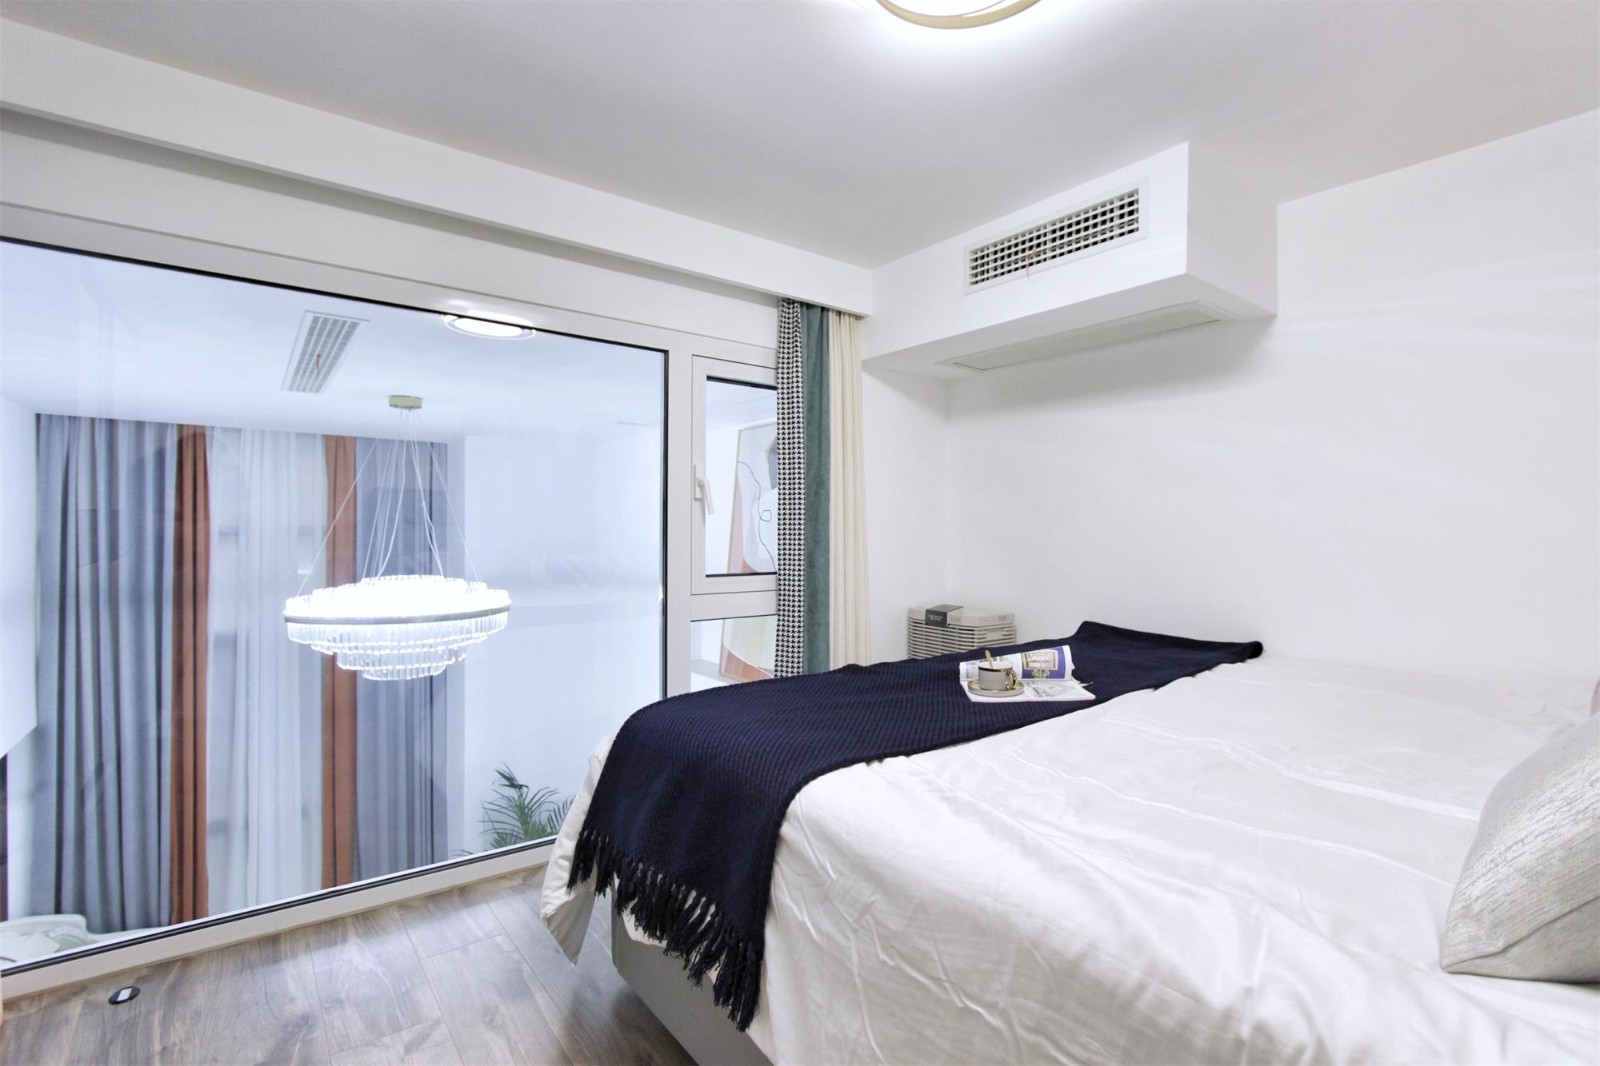 透明落地窗户打造开放性的卧室空间,同时保证了空间的日常光照和空气